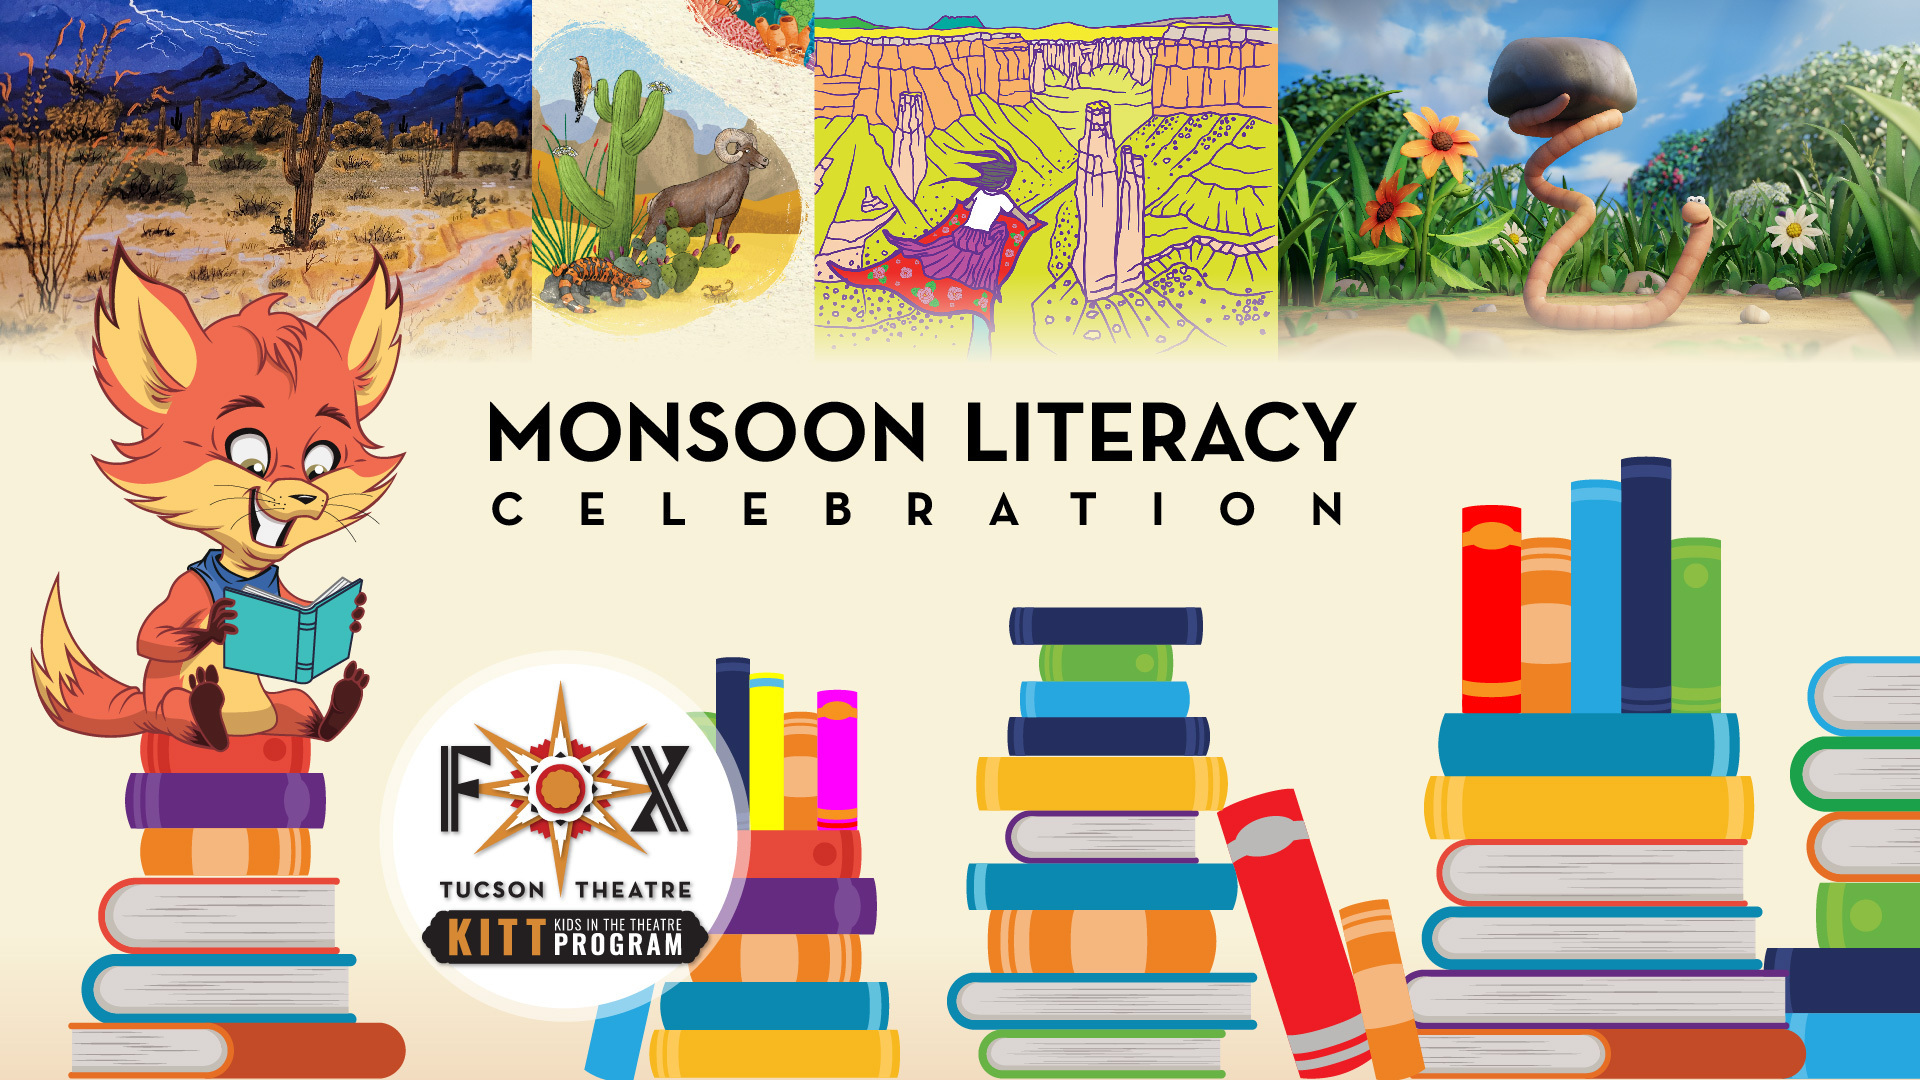 Monsoon LIteracy Celebration, Tucson, Arizona, United States